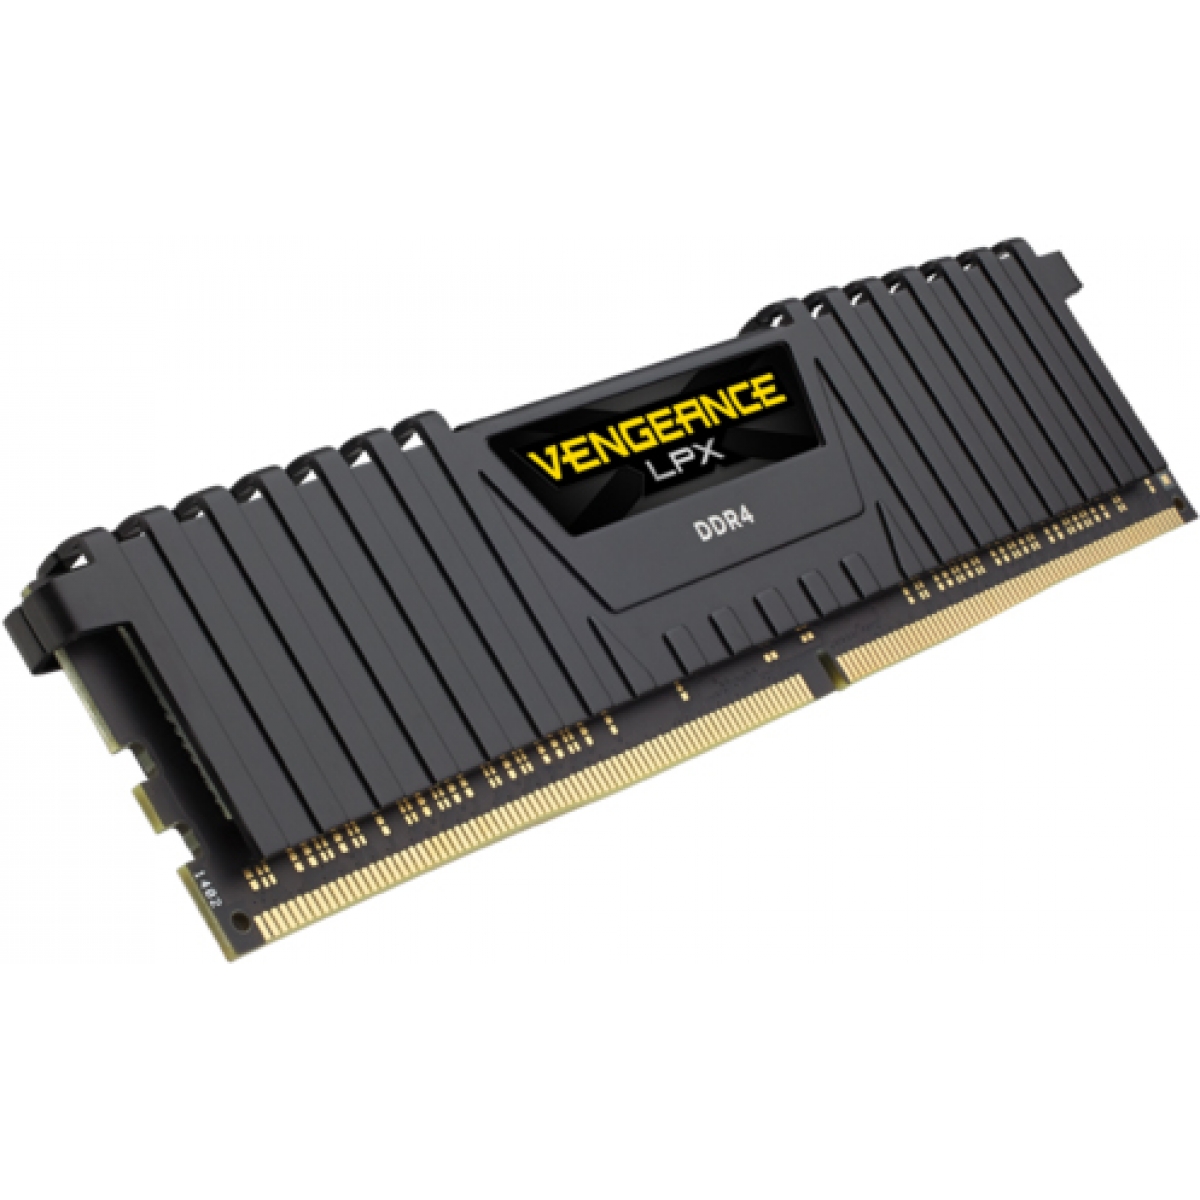 Memória DDR4 Corsair Vengeance LPX, 8GB 2666MHz, CMK8GX4M1A2666C16 